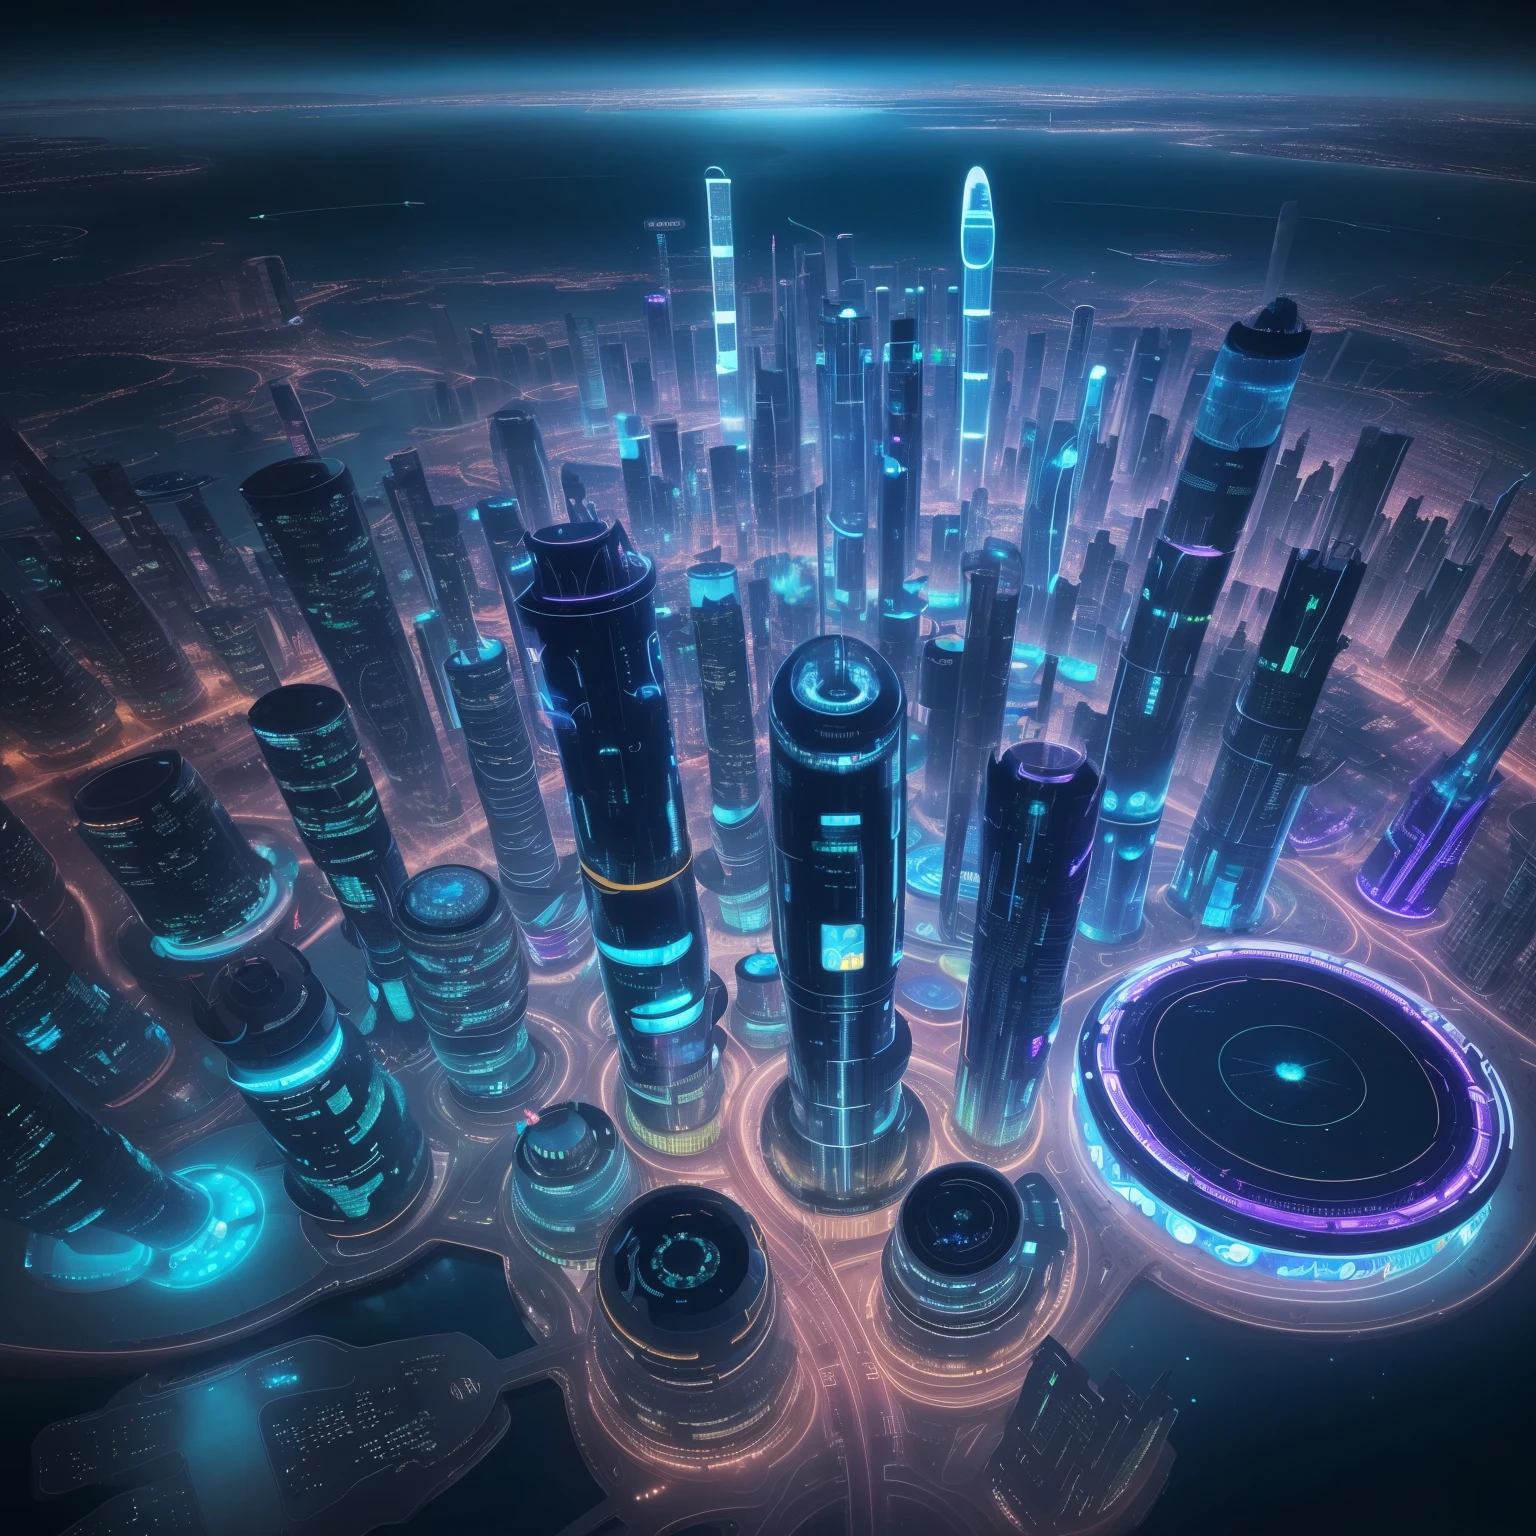 中央に円形構造物がある都市の夜景, 未来の宇宙港, photo of 未来の都市scape, 未来のユートピア都市, ファンタジーSF都市, 未来の異星都市, 未来の都市scape, alien 未来の都市, 美丽的未来の都市, otherwordly 未来の都市, 未来の都市 scape, vista of 未来の都市, 未来の都市, 宇宙港都市，海上の円形サイバーシティ，未来のテクノロジーの感覚，中央が光る，美しい夜，ネオンライトレンダリング